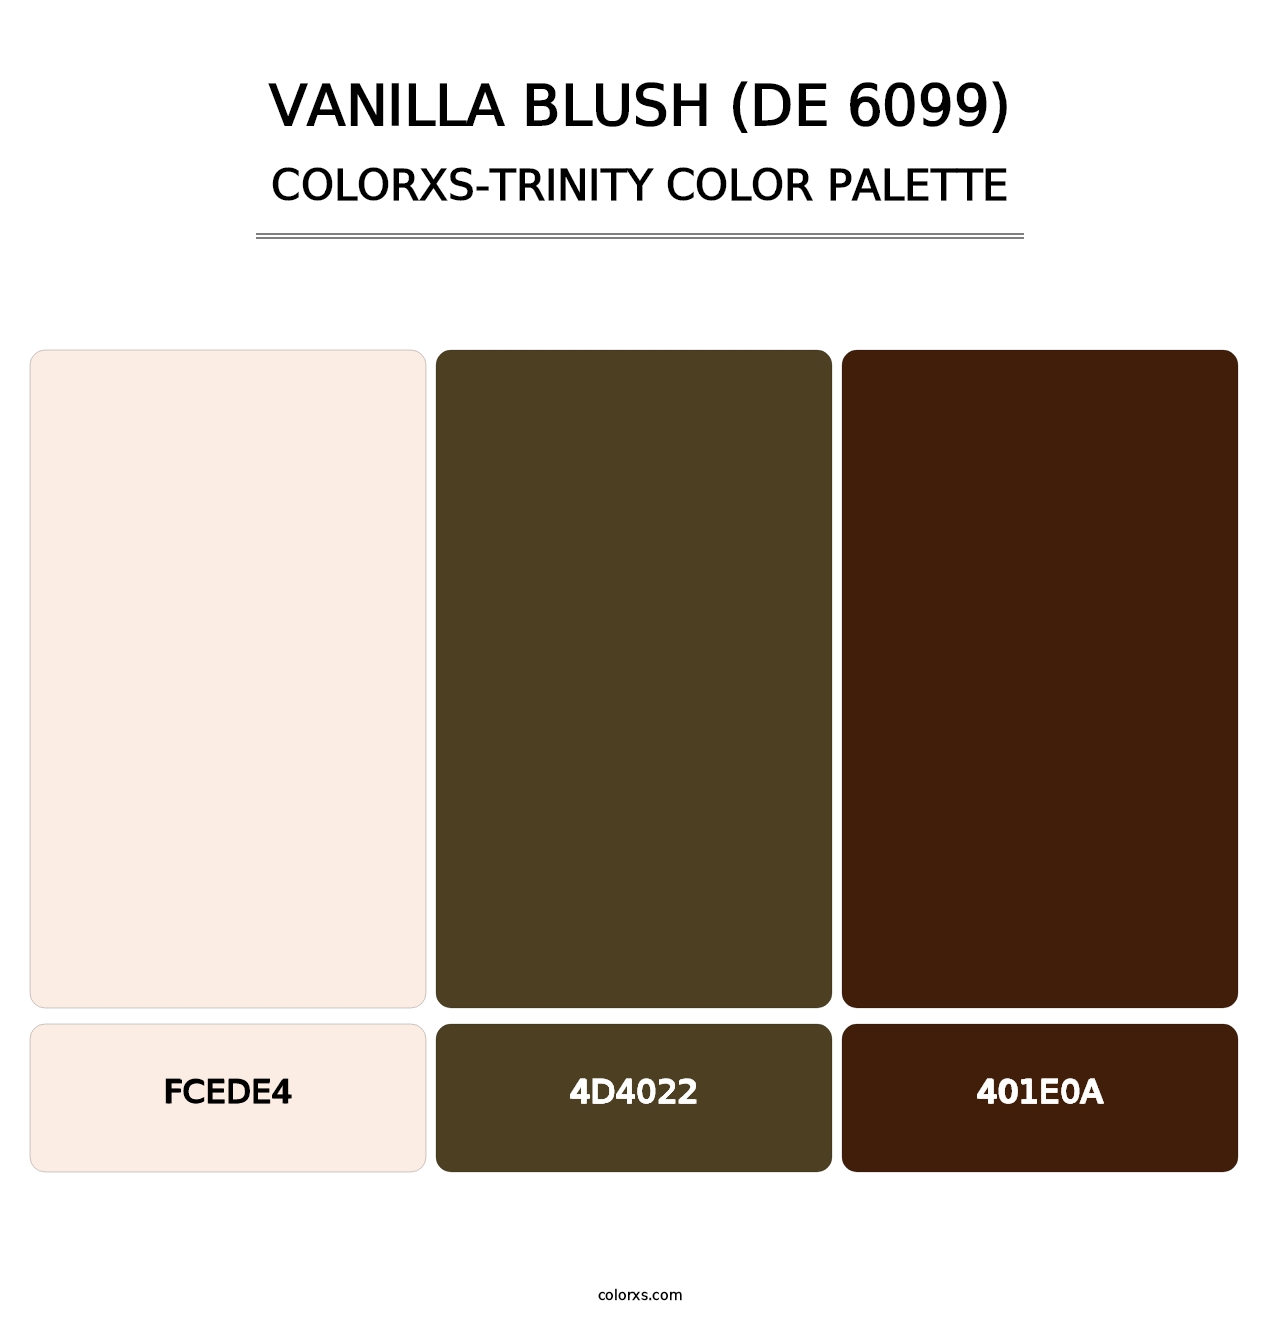 Vanilla Blush (DE 6099) - Colorxs Trinity Palette